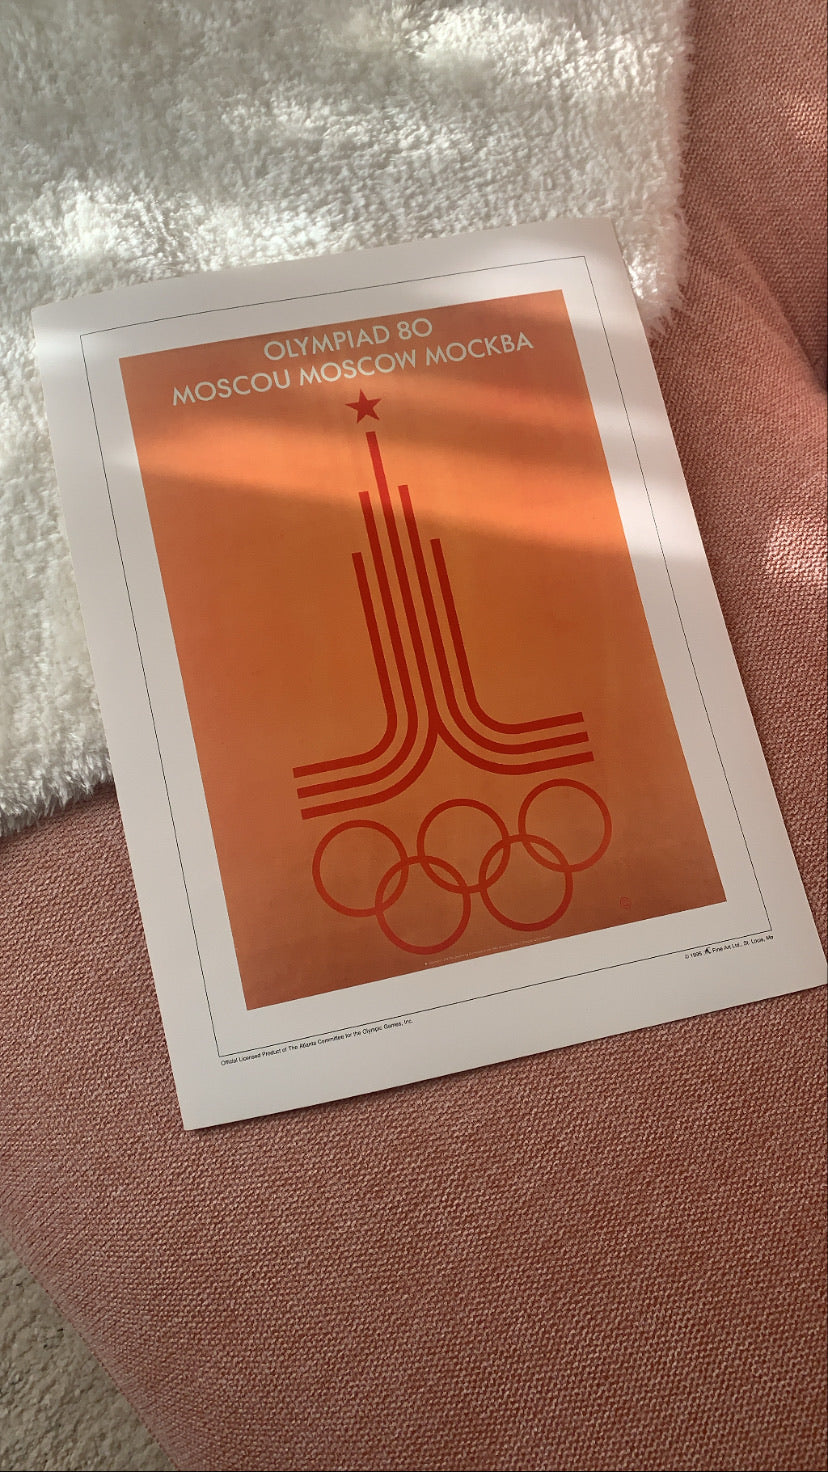 Vintage Olympic Prints